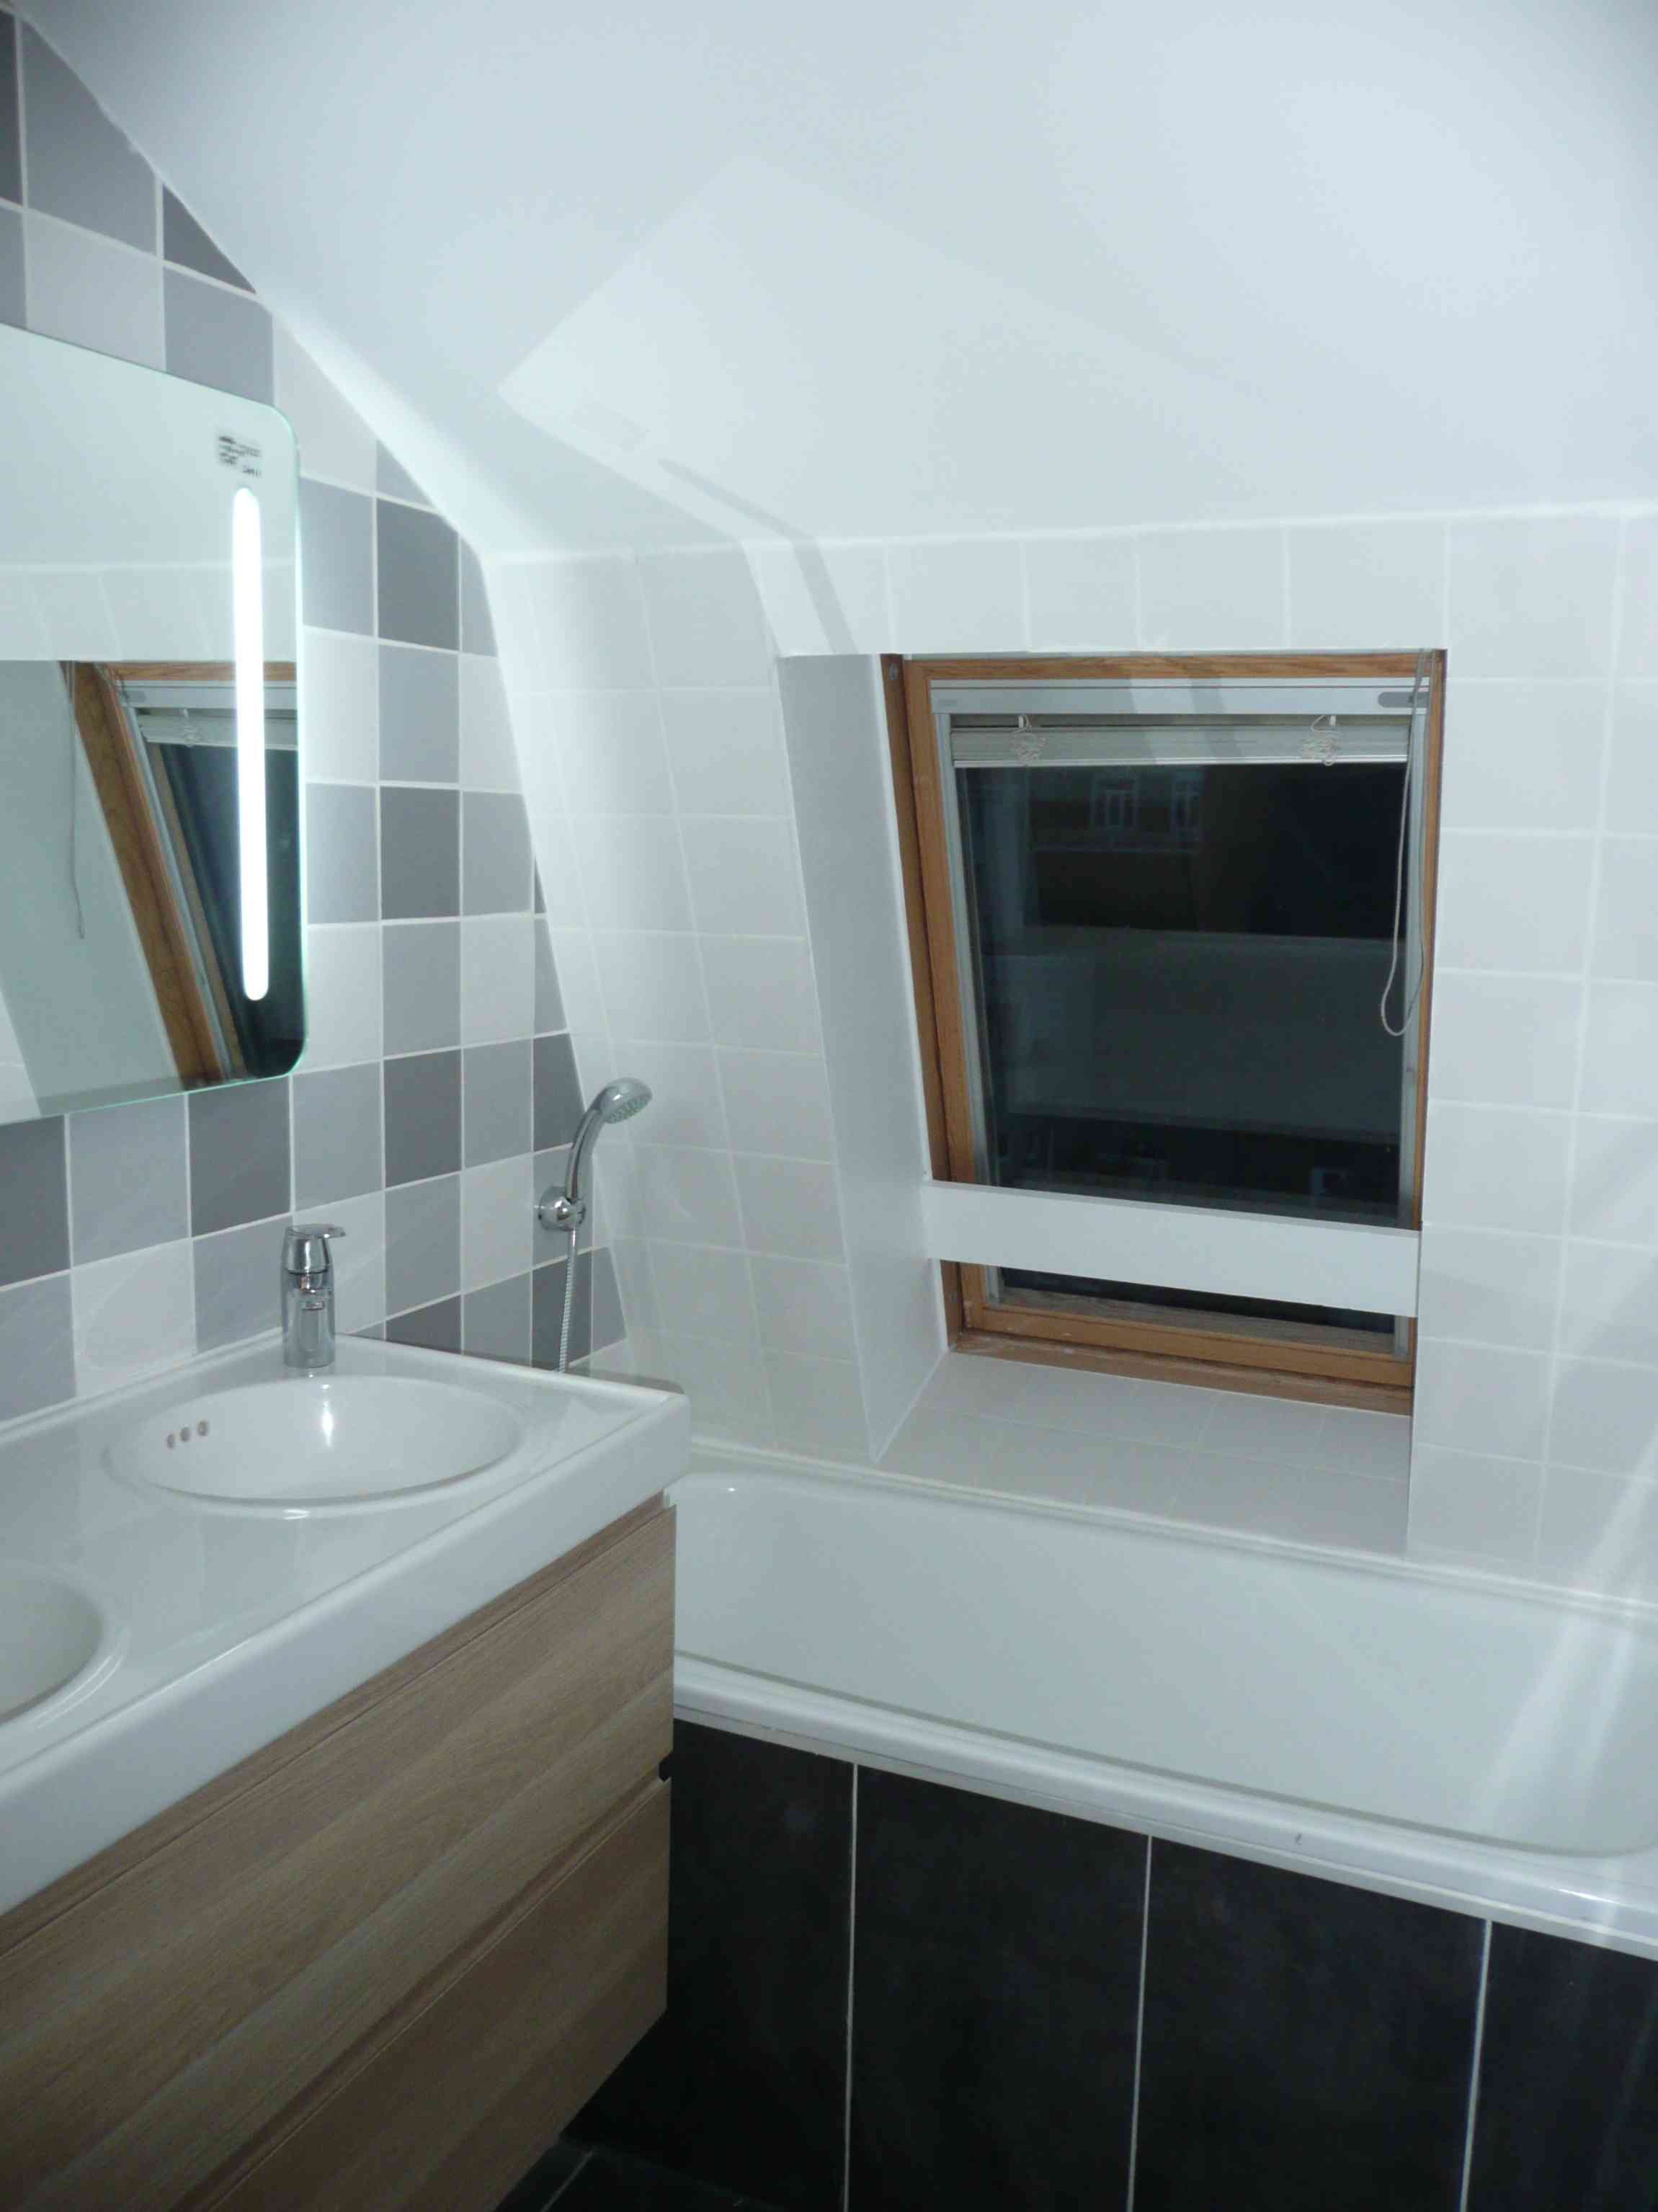 Salle de bain Lille gris renovation A tous les etages